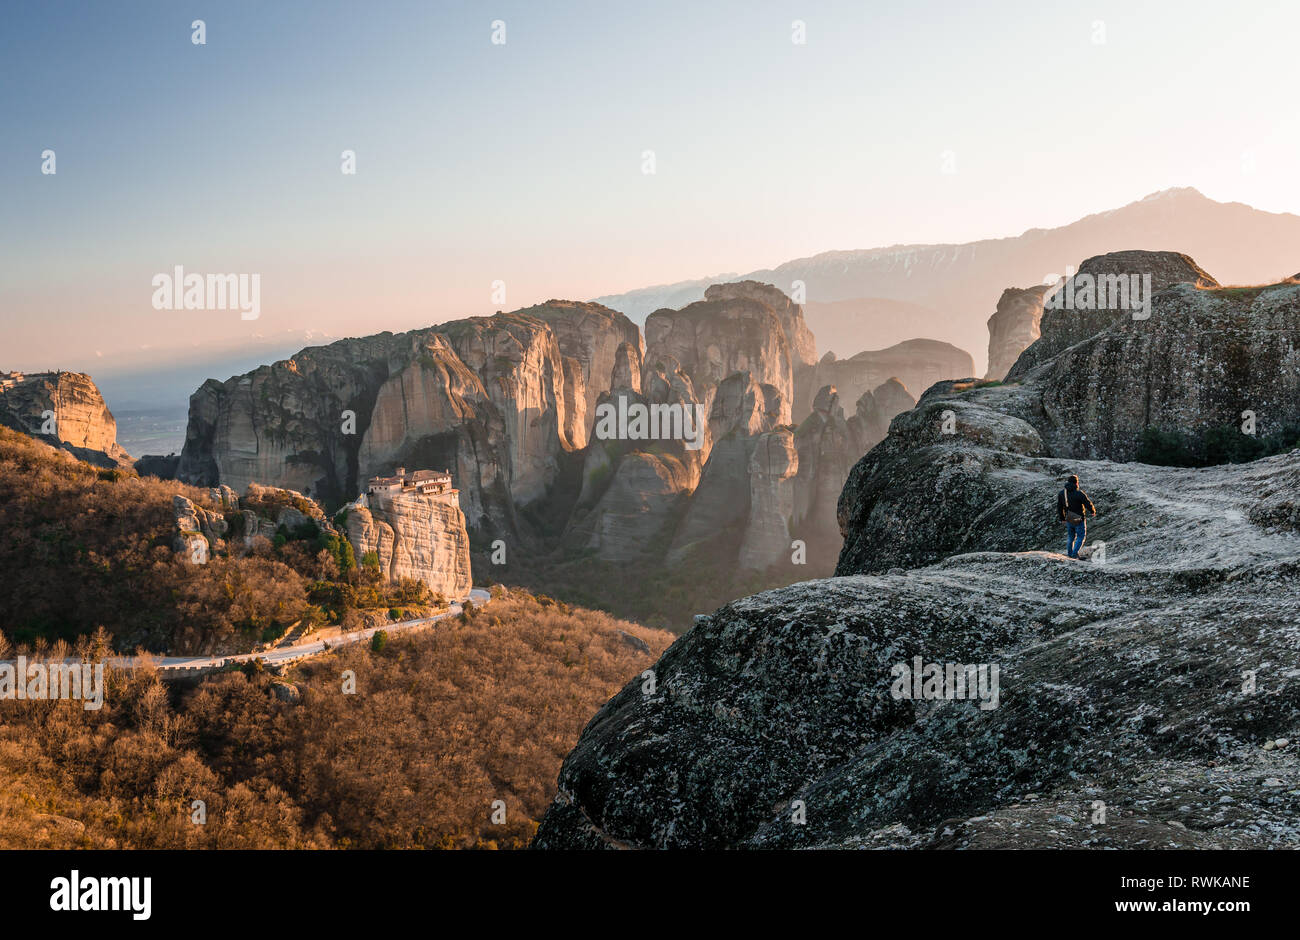 Meteora es una formación rocosa en la Grecia central, sede de uno de los mayores y más precipitadamente construyeron complejos de los monasterios ortodoxos orientales. Foto de stock